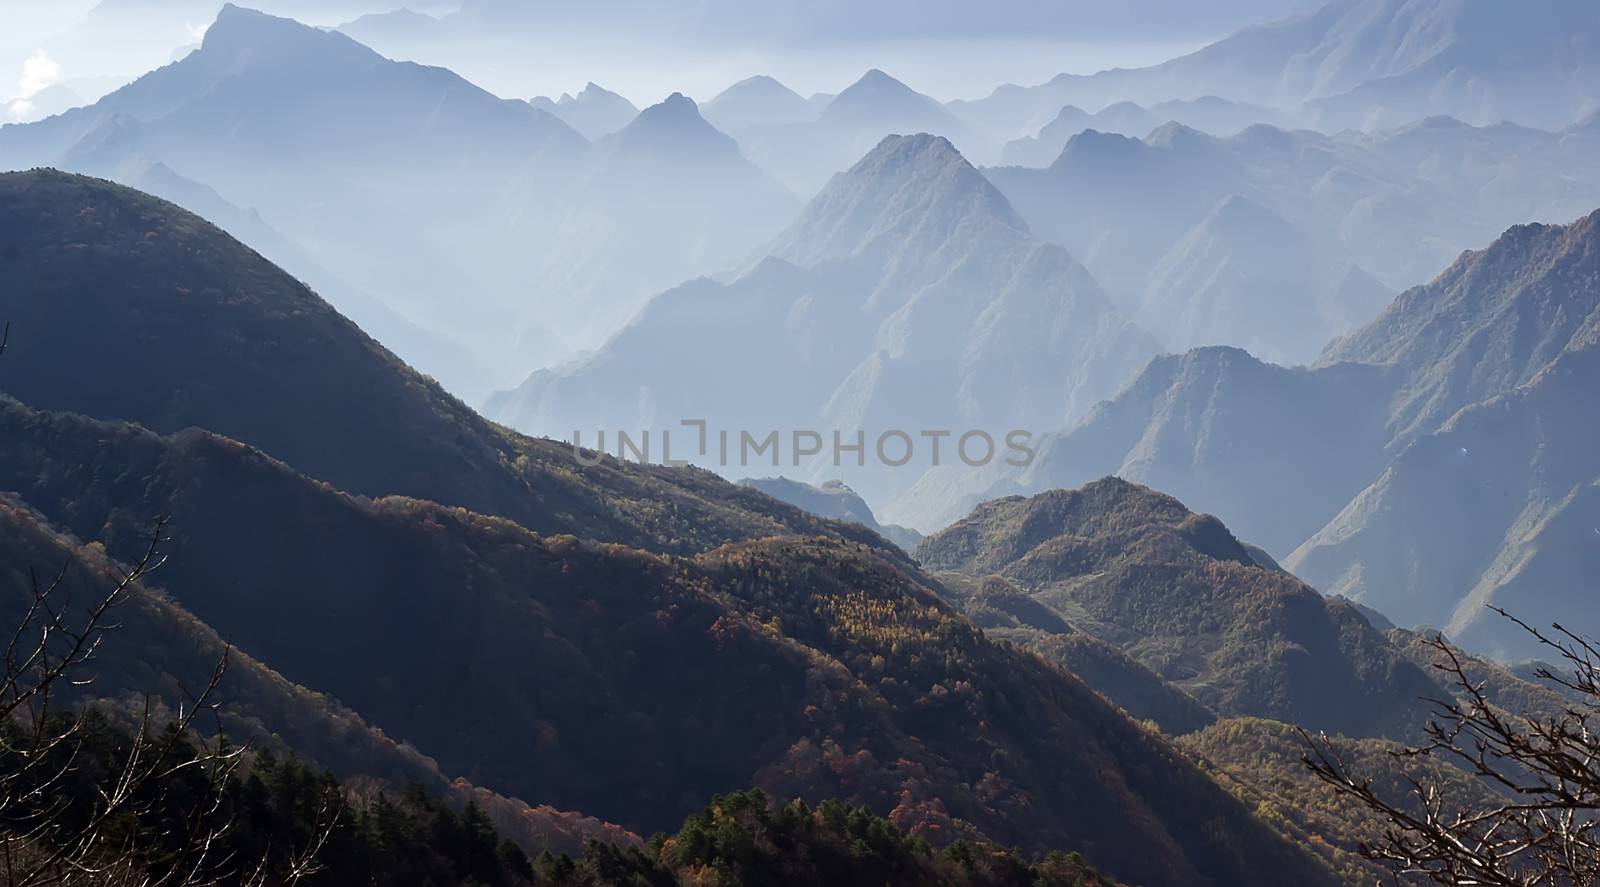 Mountain peaks. Tree. Clouds - Shennongjia beauty by xfdly5